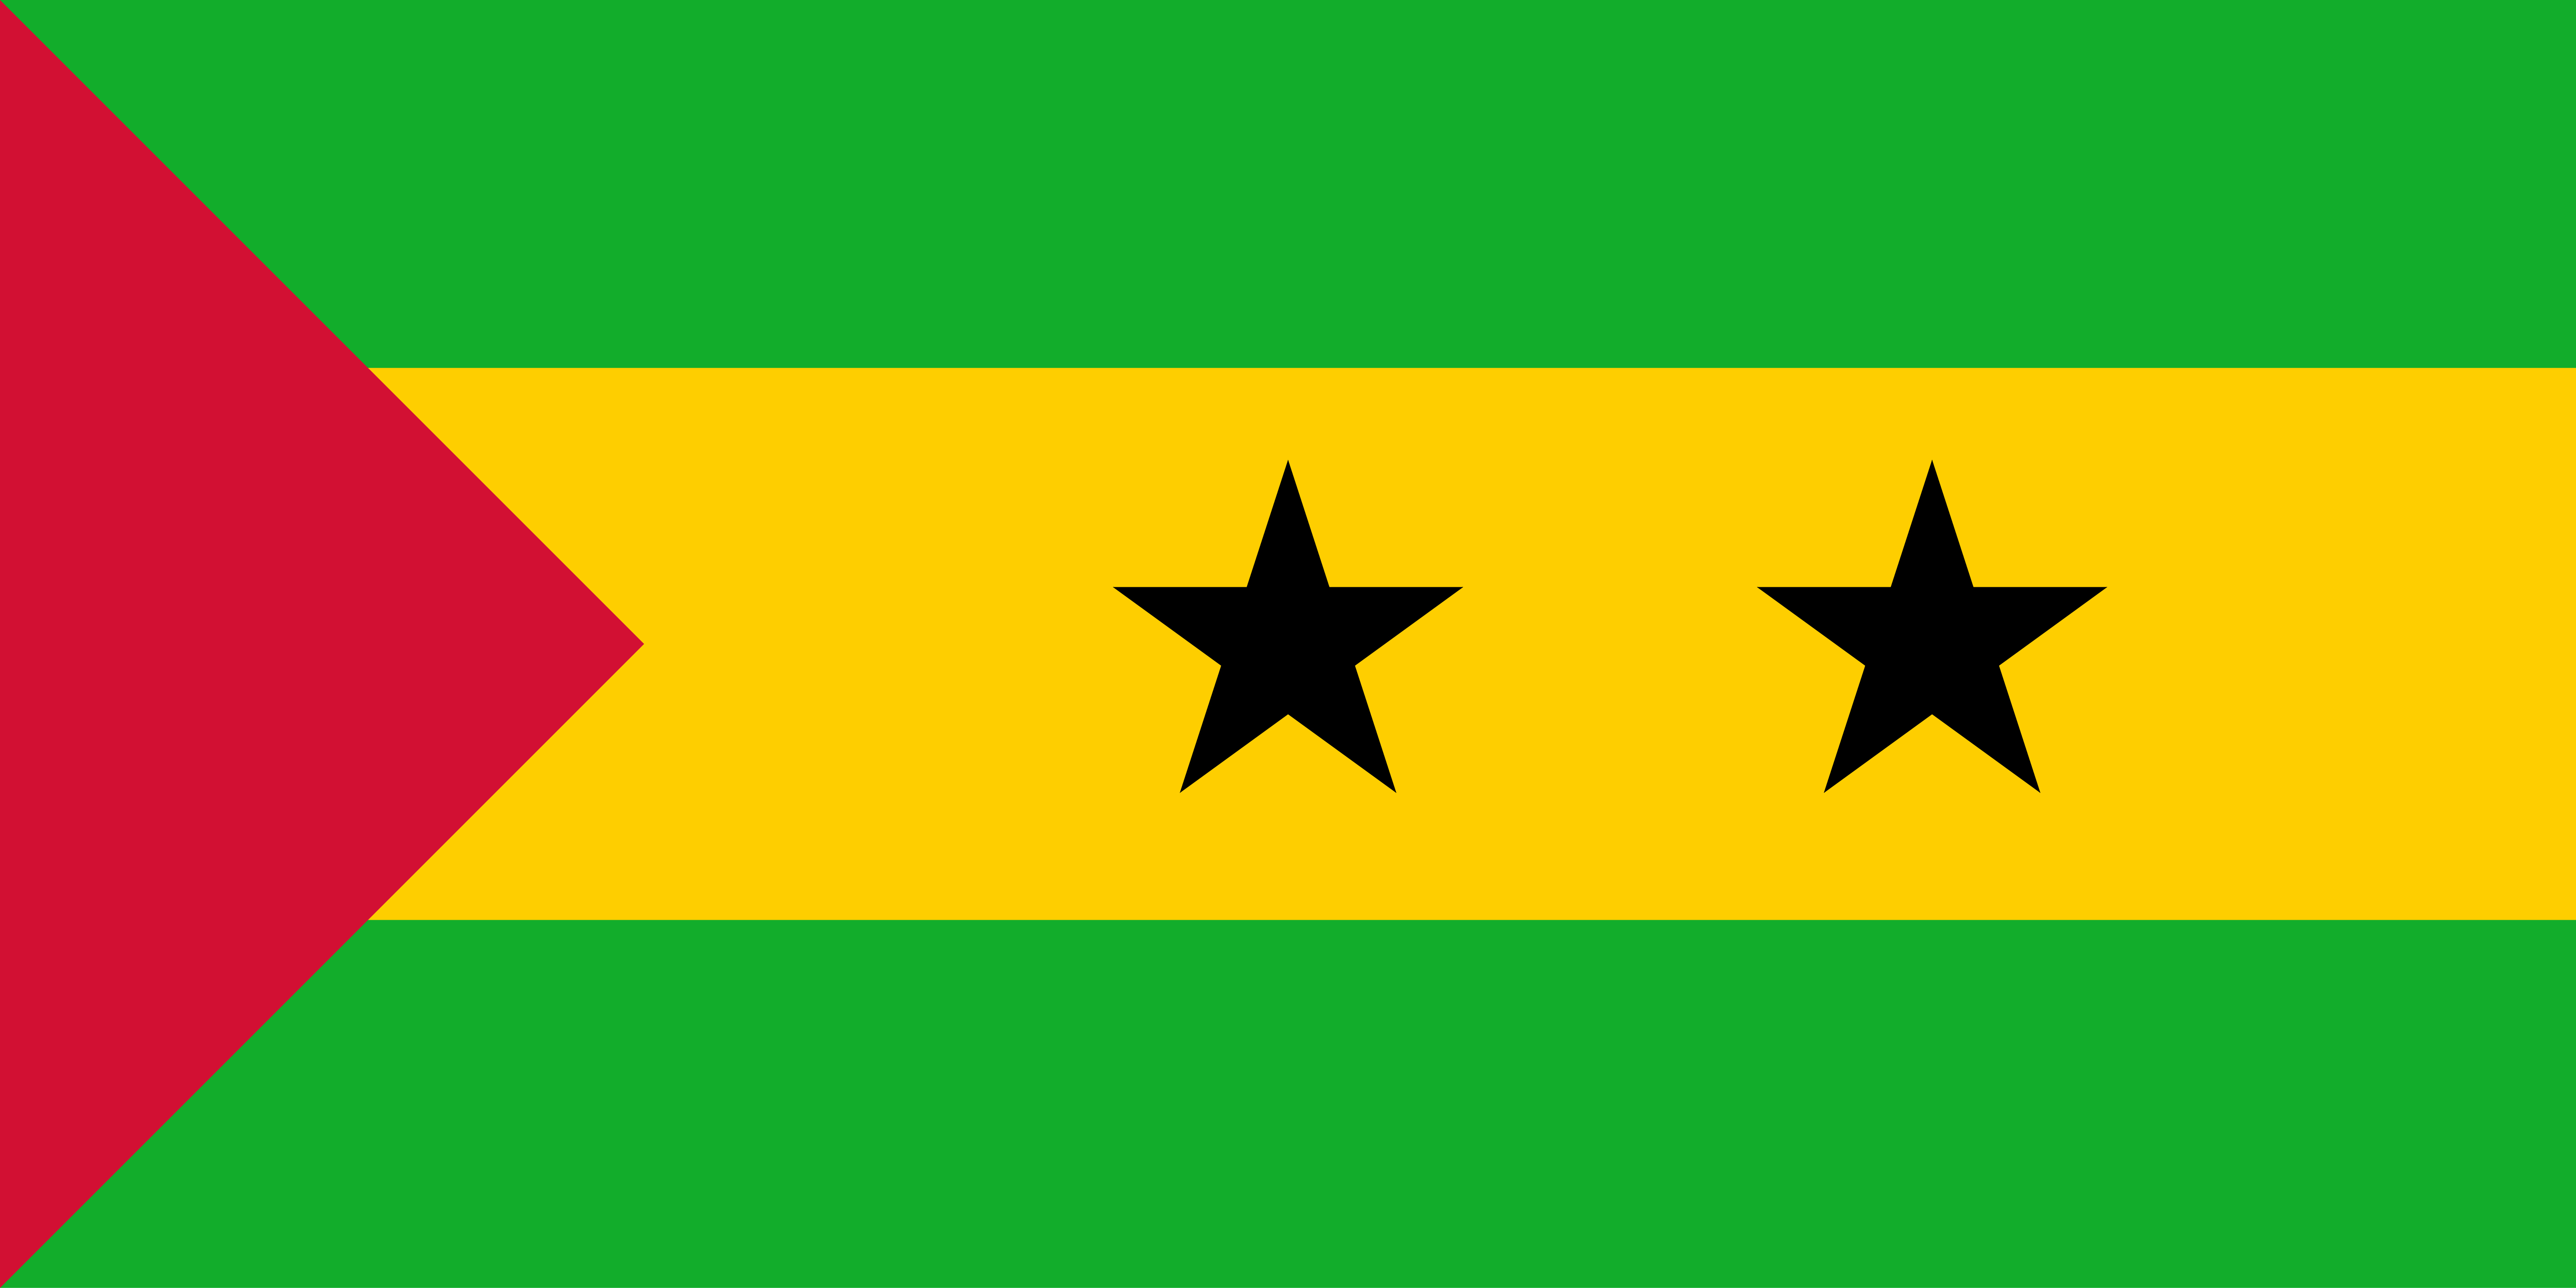 Sao Tome and Principe's flag